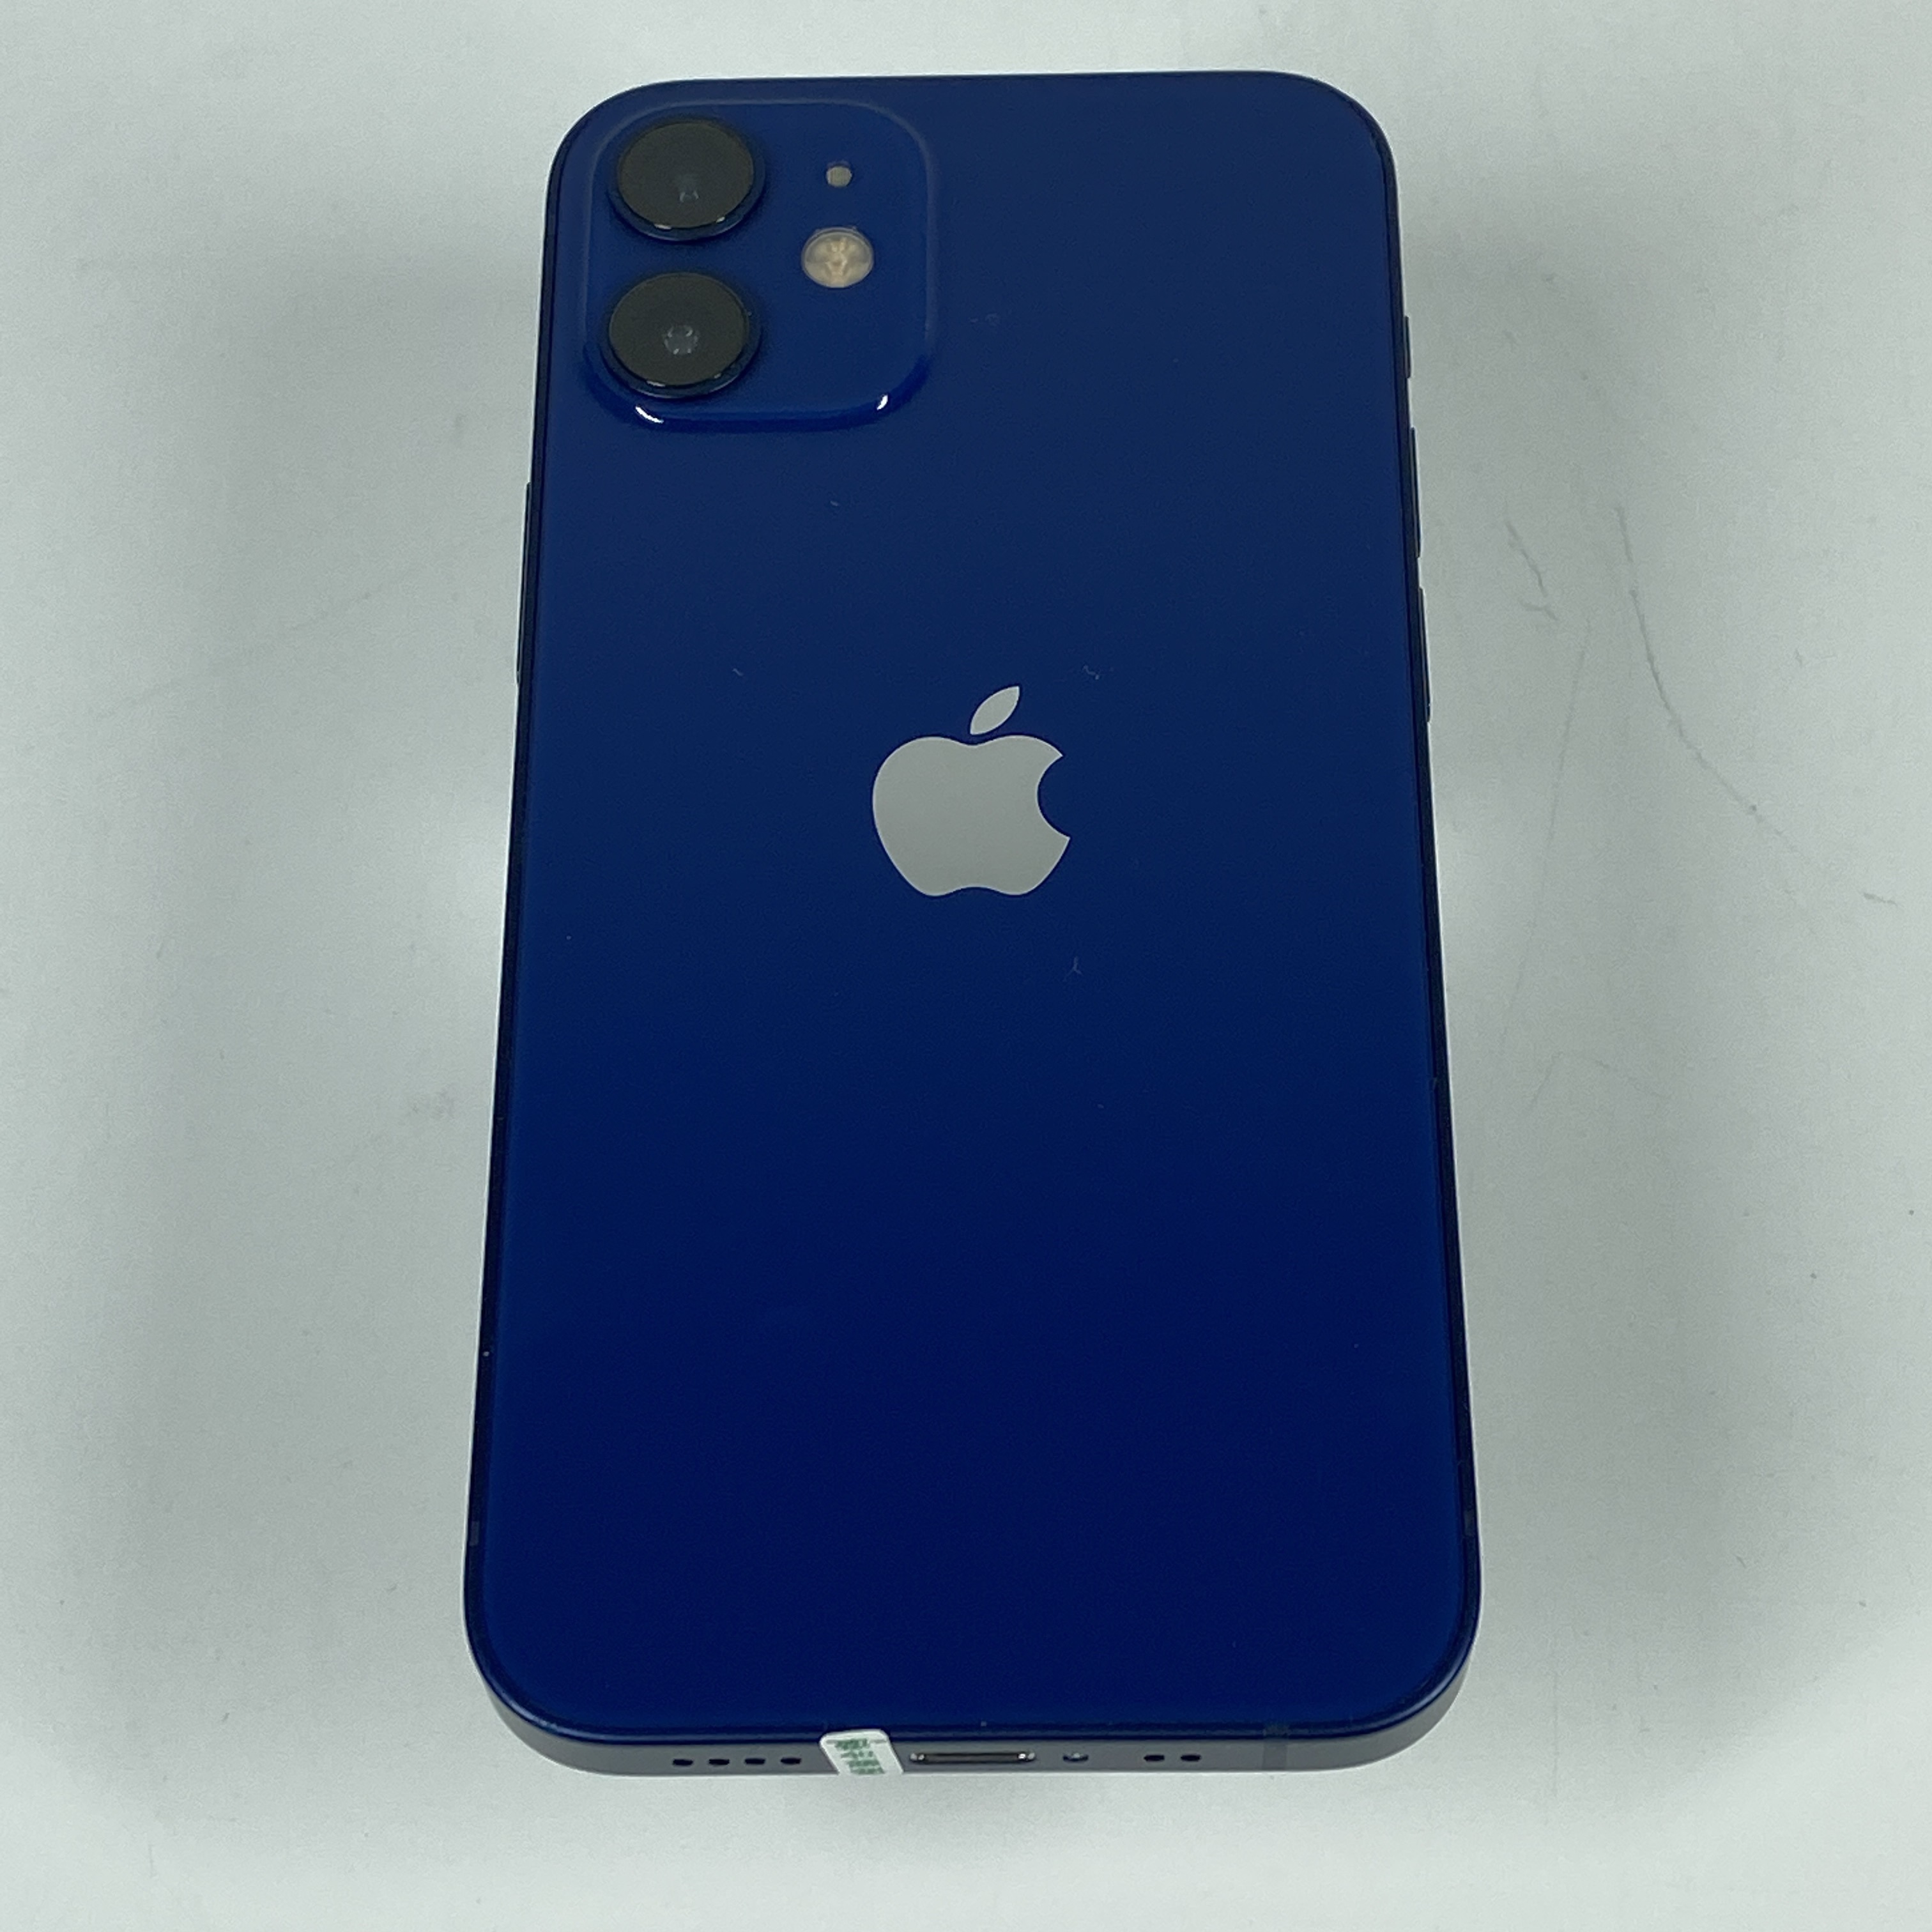 苹果【iPhone 12 mini】5G全网通 蓝色 64G 国行 9成新 真机实拍